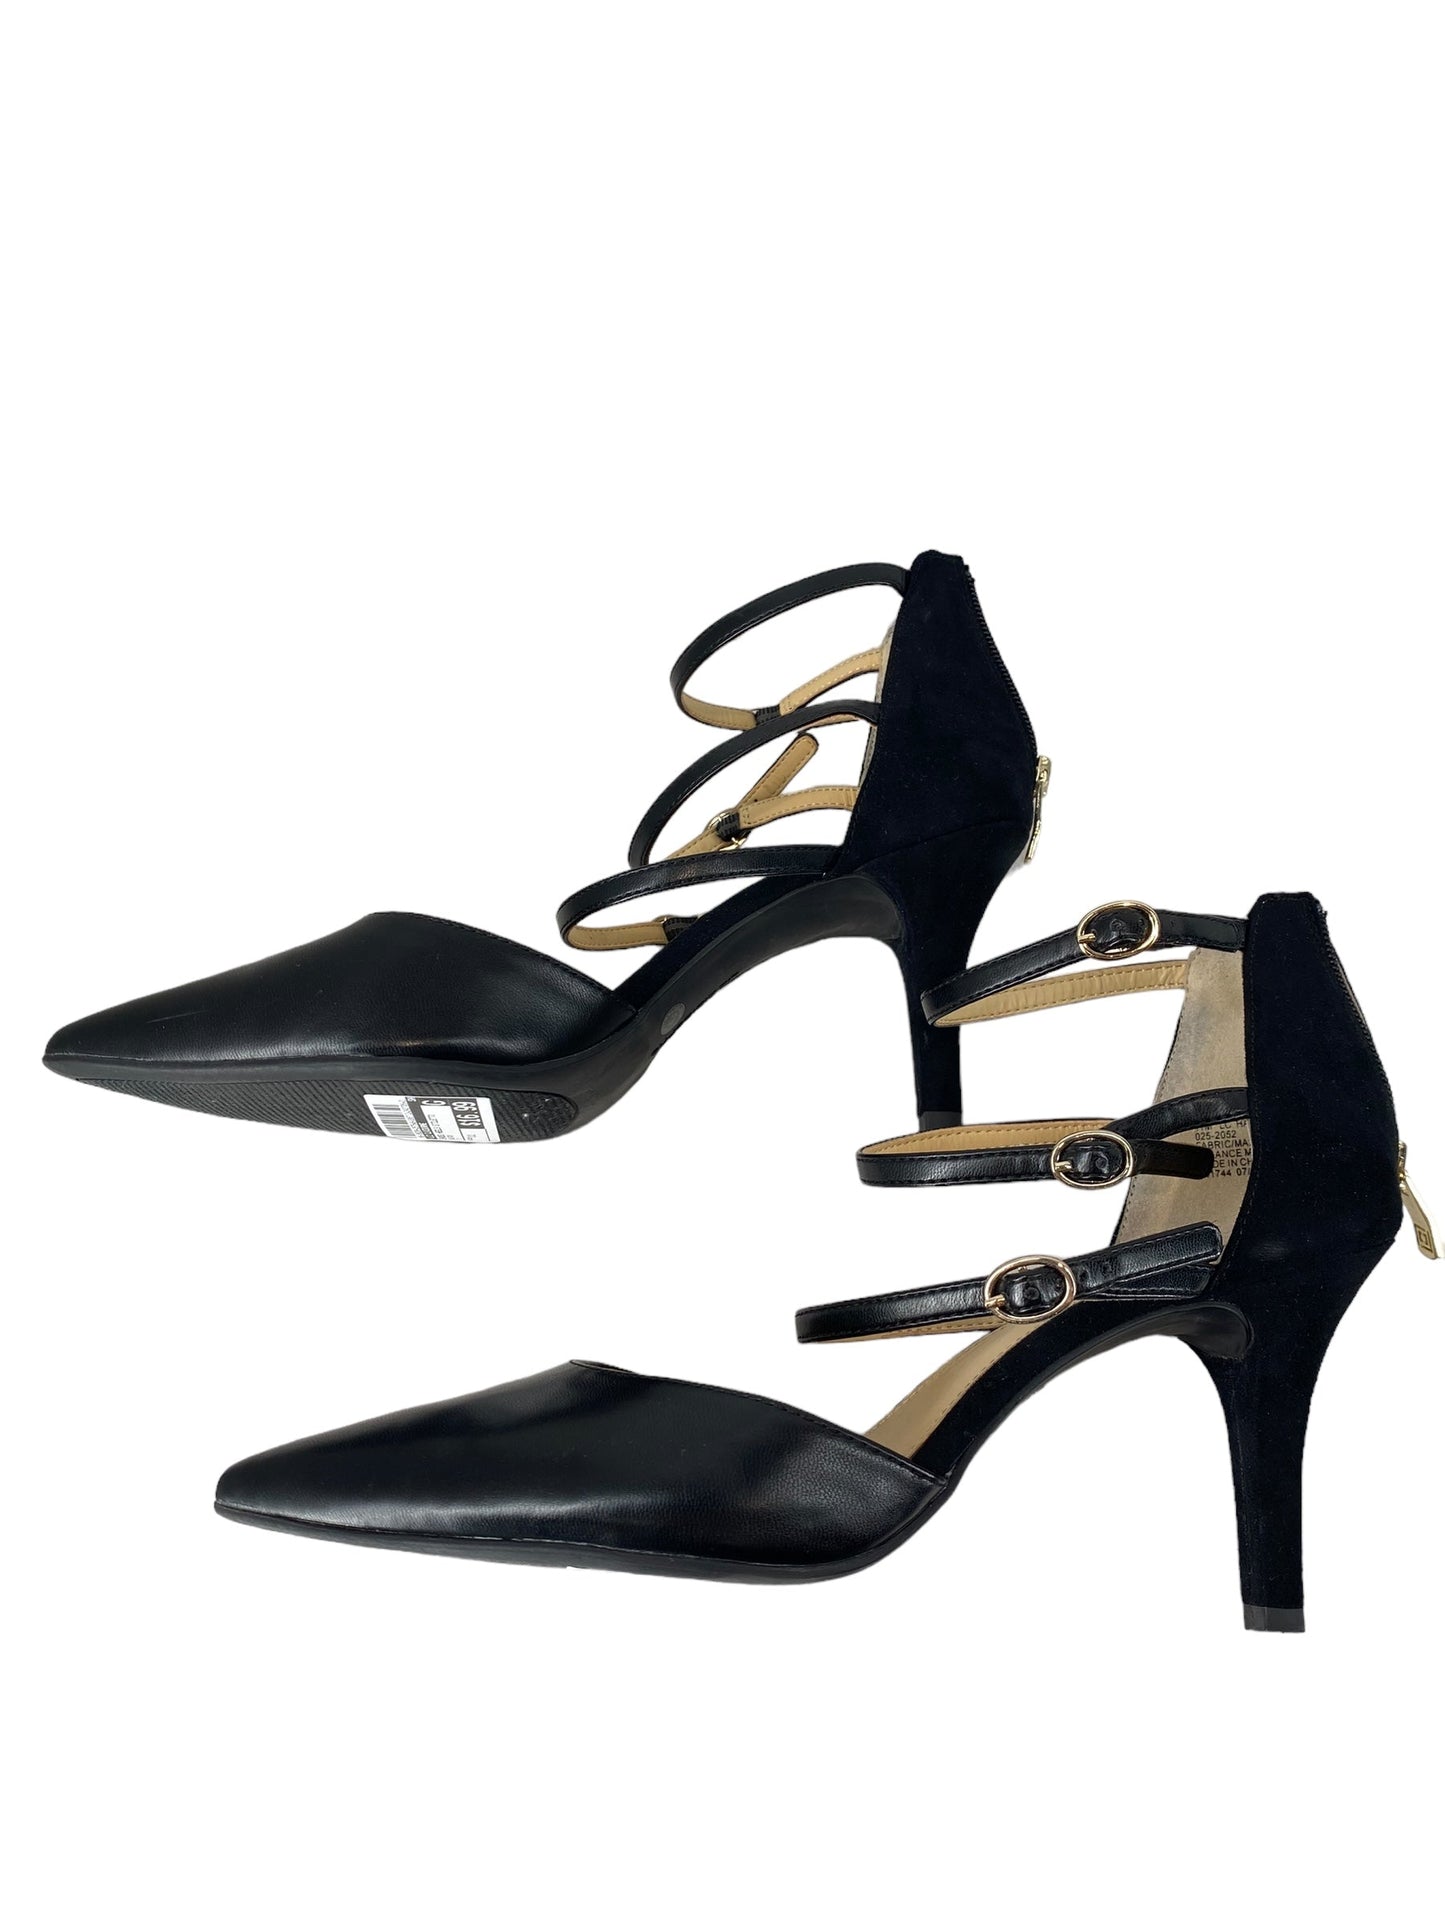 Black Shoes Heels Stiletto Liz Claiborne, Size 11